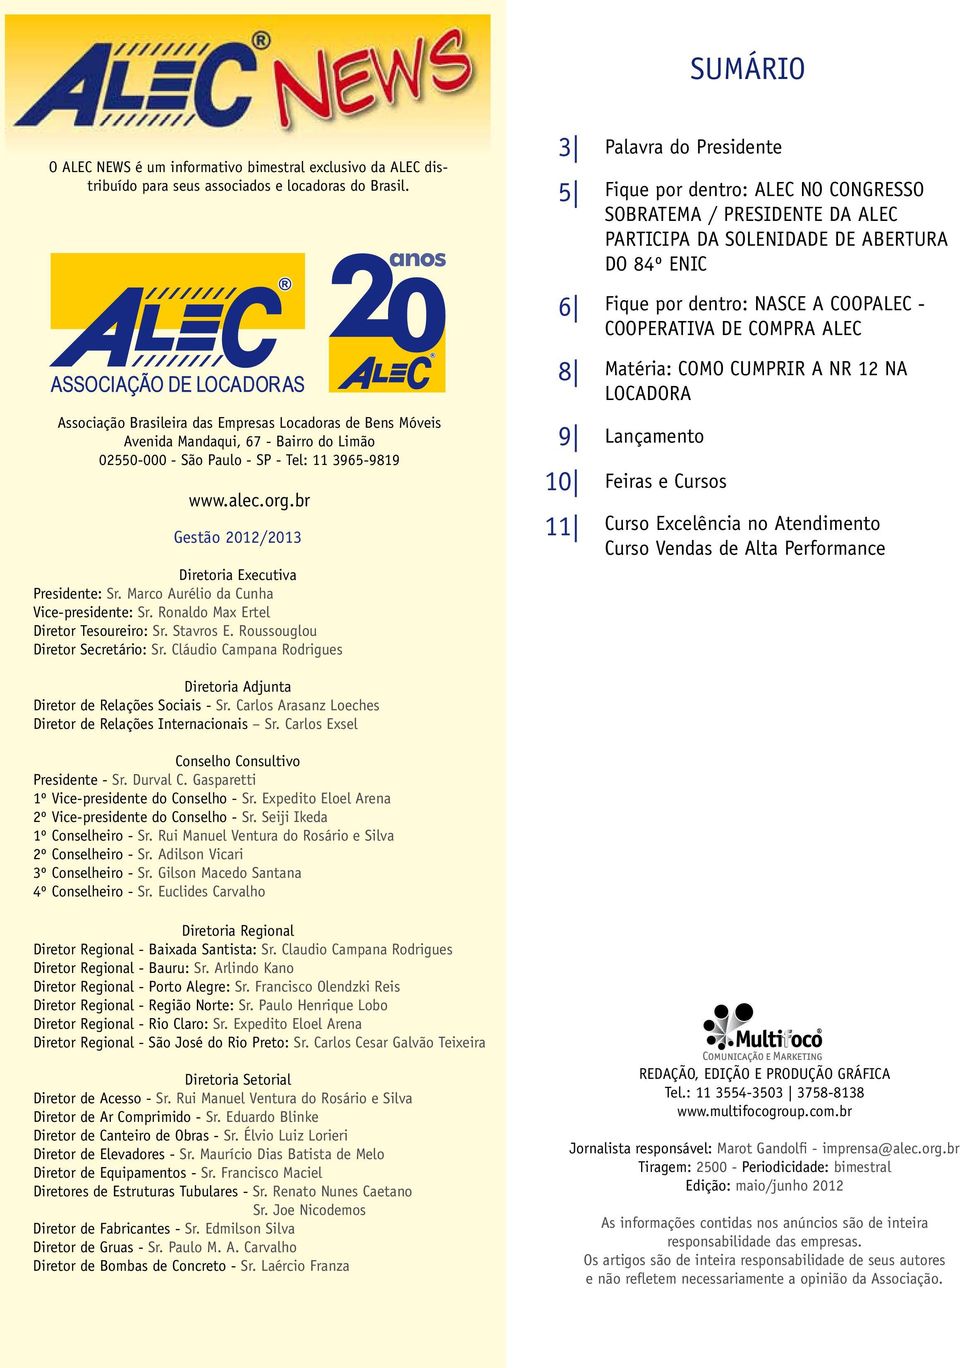 COMPRA ALEC ASSOCIAÇÃO DE LOCADORAS Associação Brasileira das Empresas Locadoras de Bens Móveis Avenida Mandaqui, 67 - Bairro do Limão 02550-000 - São Paulo - SP - Tel: 11 3965-9819 www.alec.org.